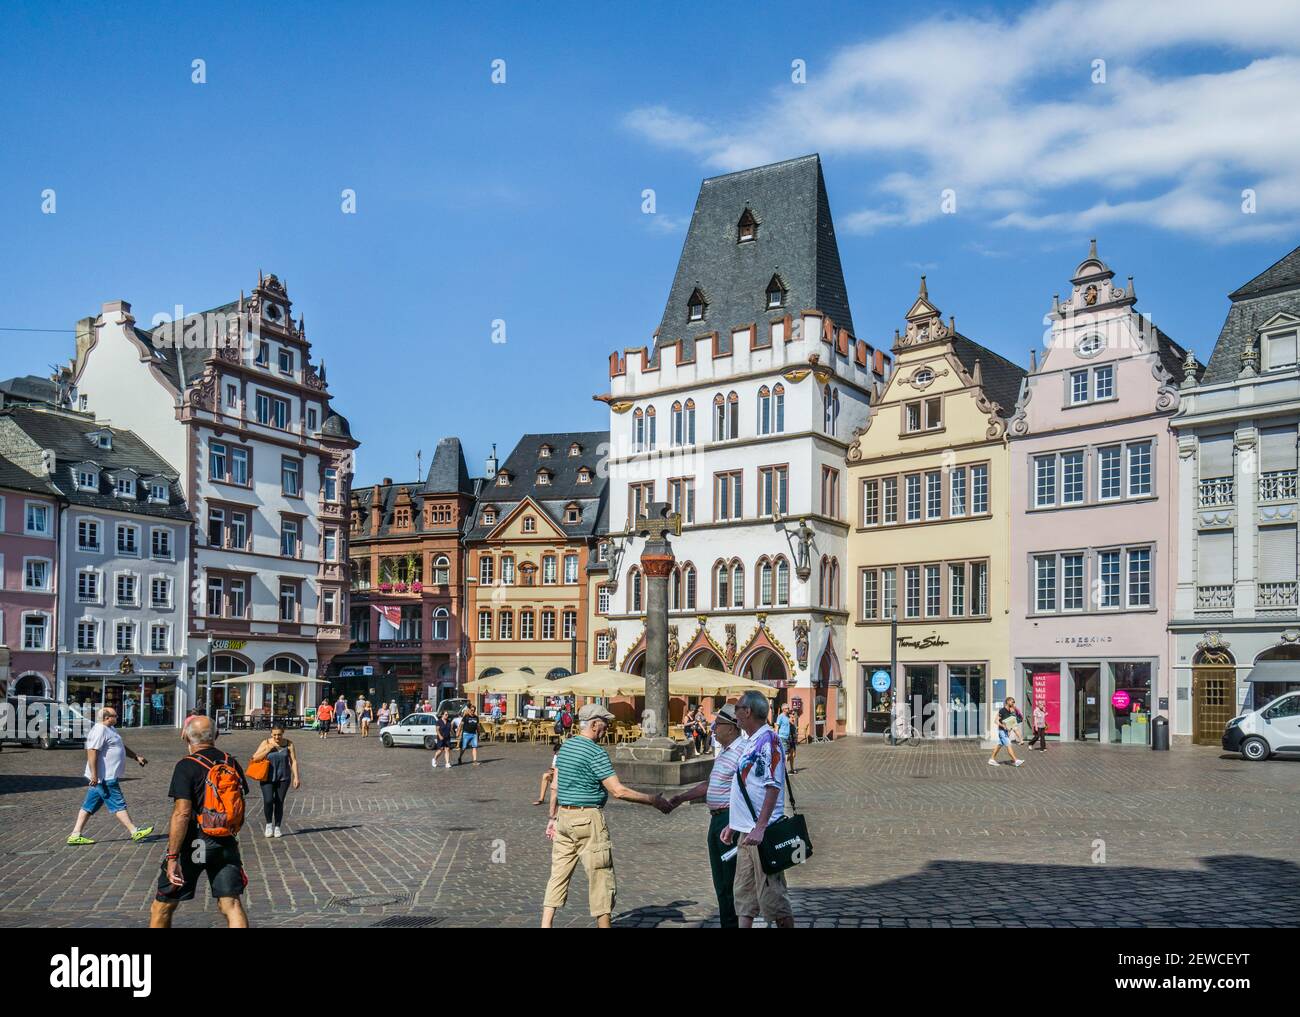 Hauptmarkt la piazza principale del mercato dell'antica città di Treviri, con la croce del mercato sullo sfondo di facciate di case del Rinascimento, Barocco, Foto Stock